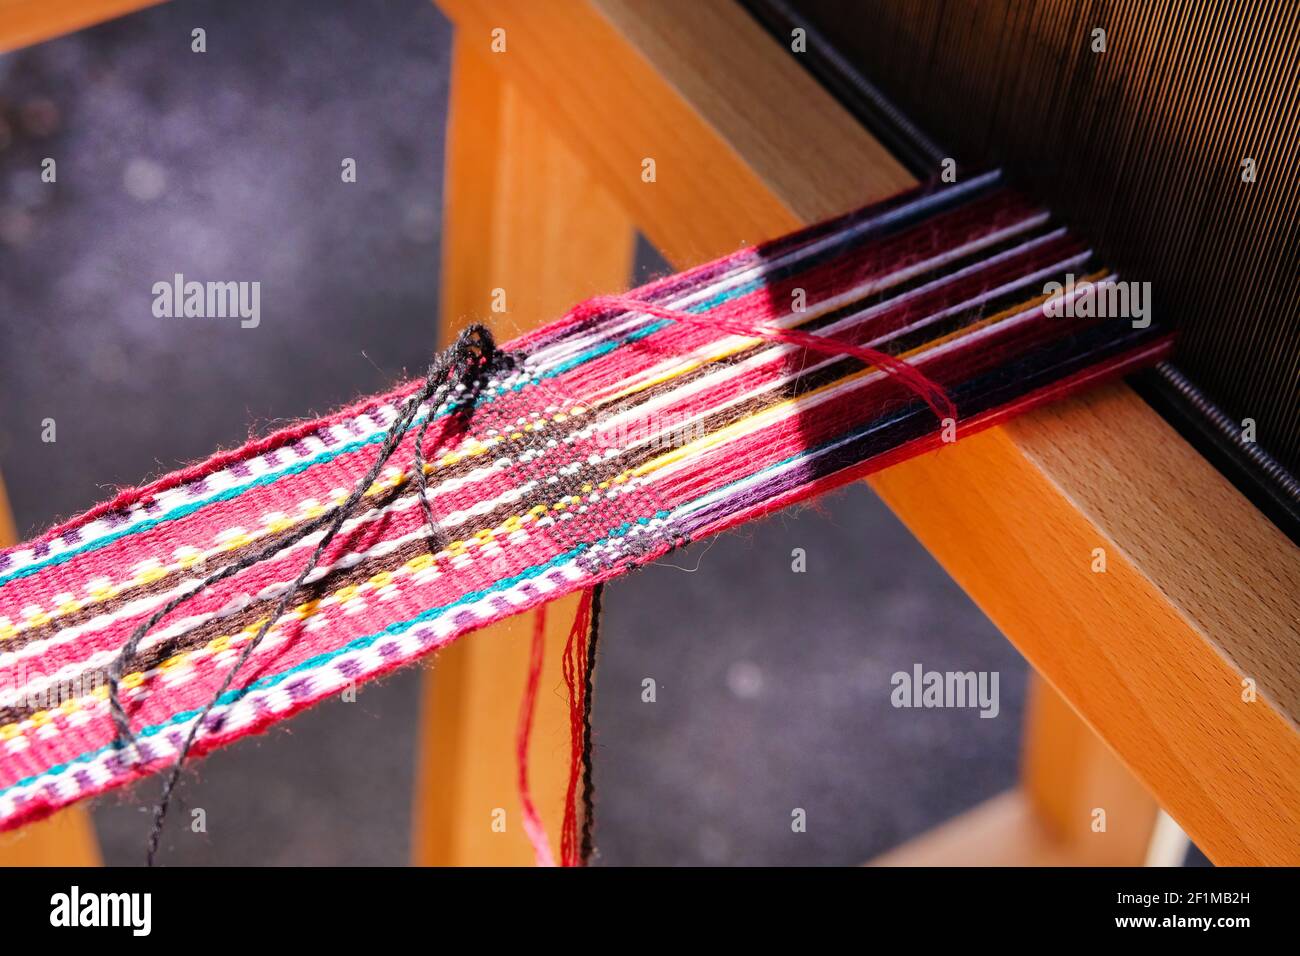 Nahaufnahme von mehrfarbigen Wollfäden auf dem traditionellen Webstuhl. Nationale Weberei Handwerk Konzept. Stockfoto